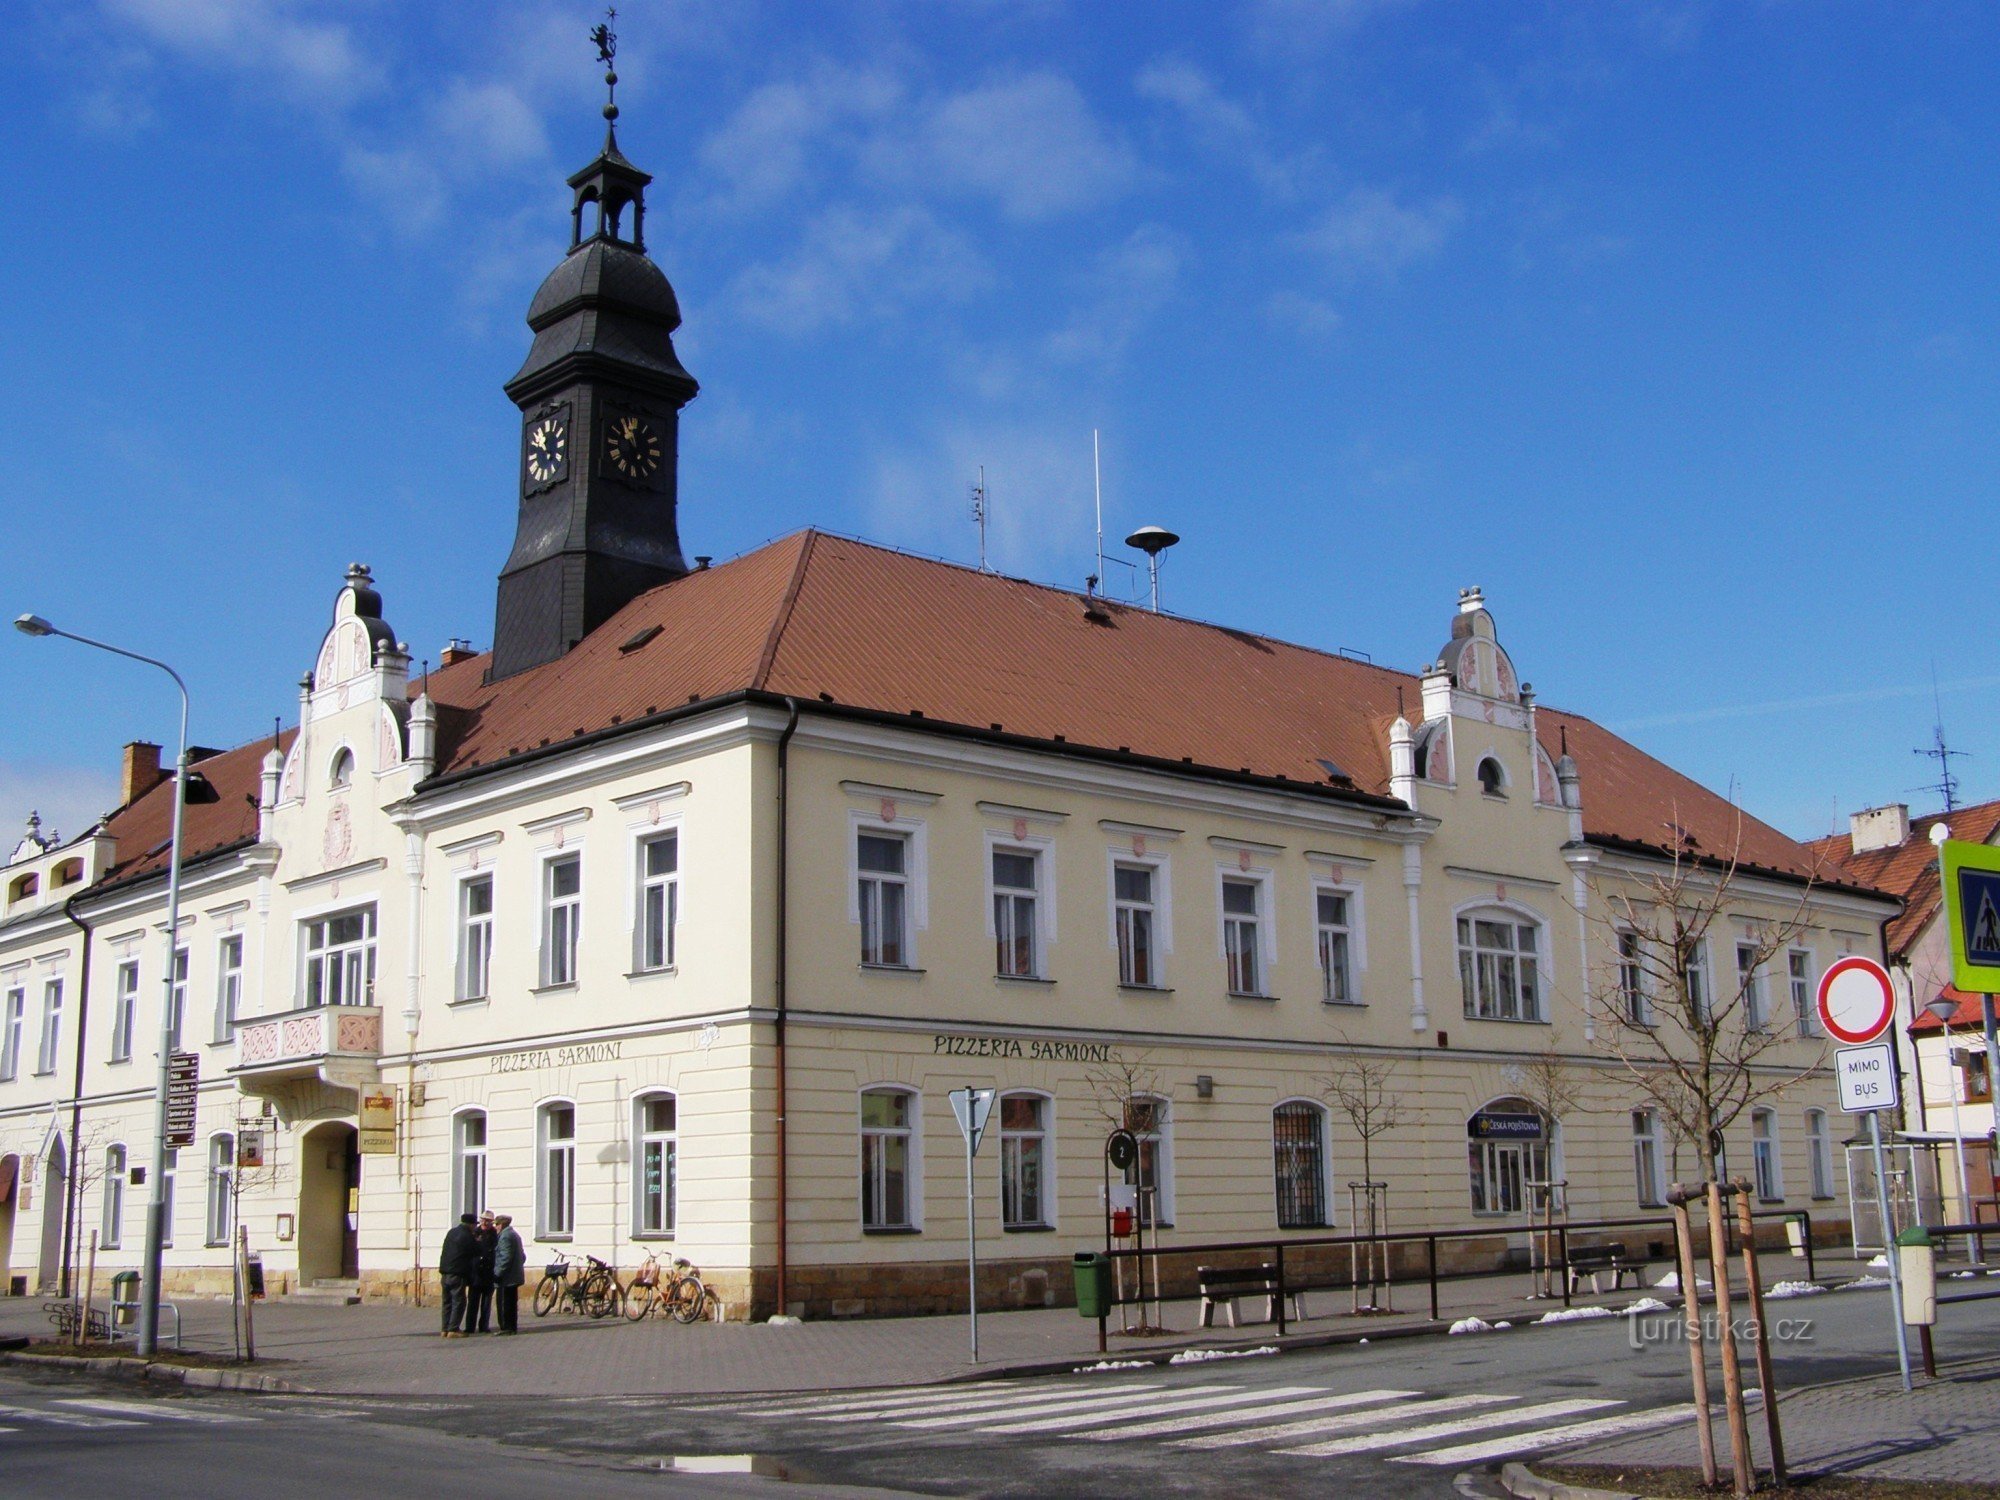 Stadt Králové